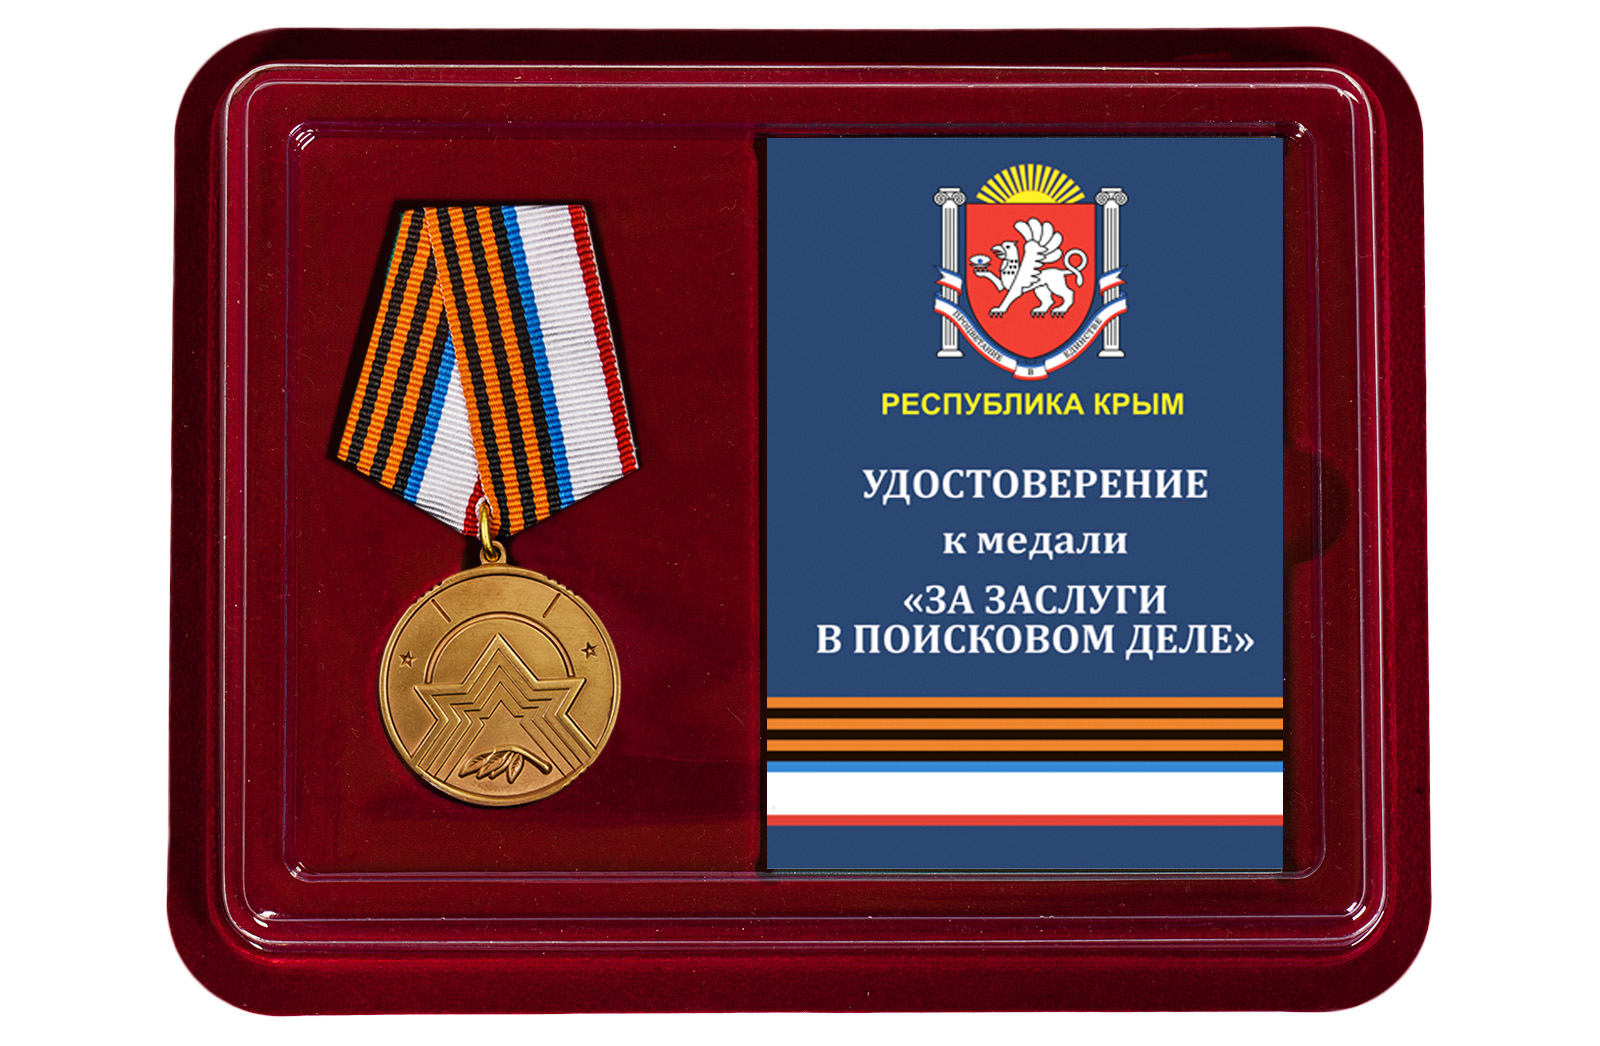 Купить медаль За заслуги в поисковом деле (Республика Крым) оптом или в розницу